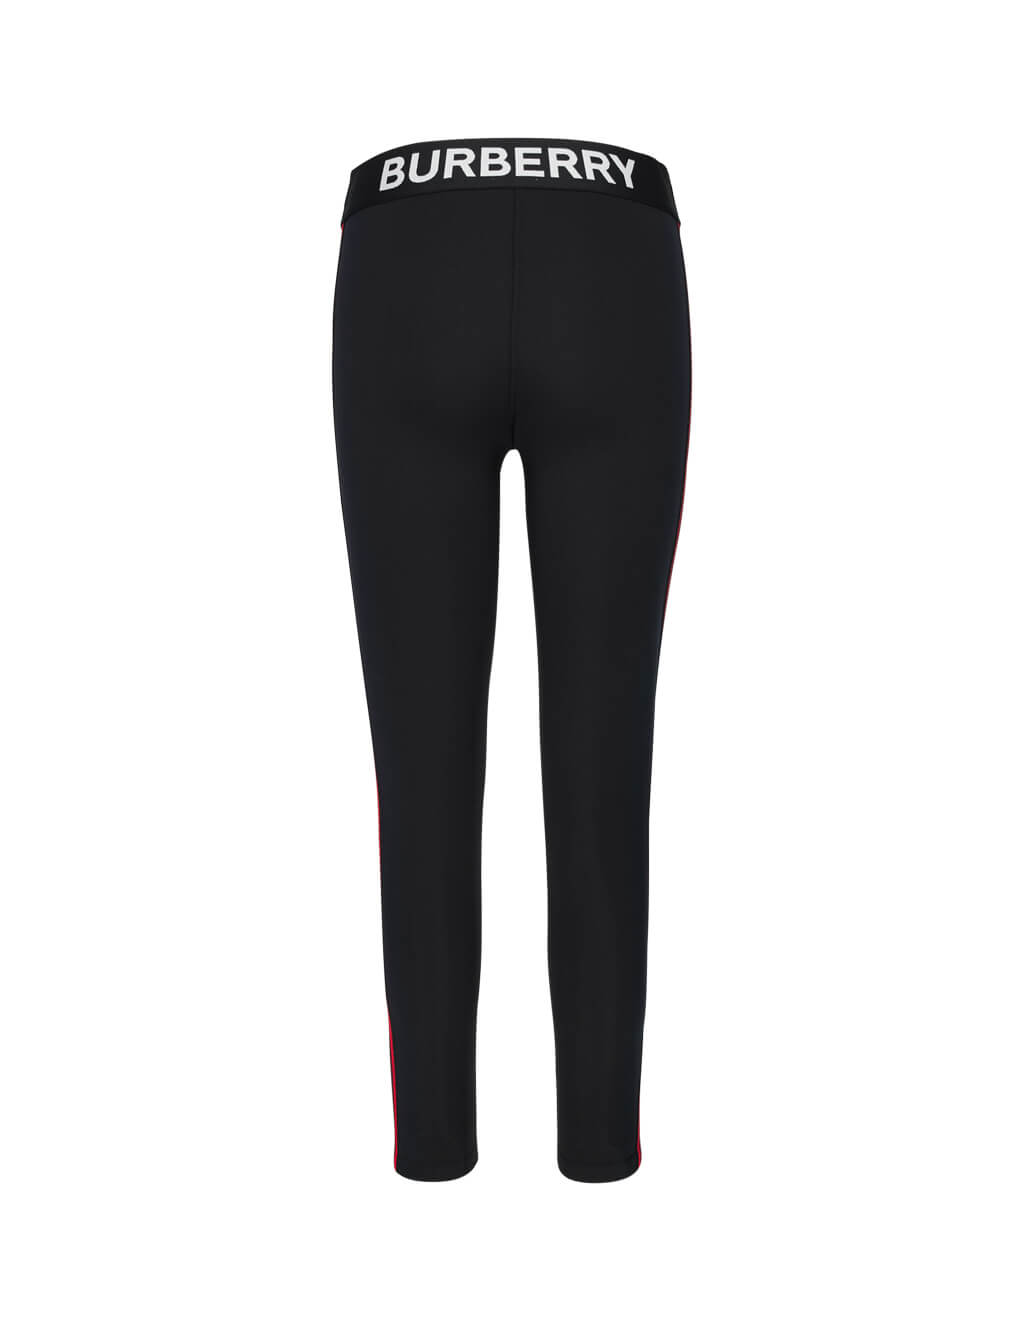 burberry leggings womens